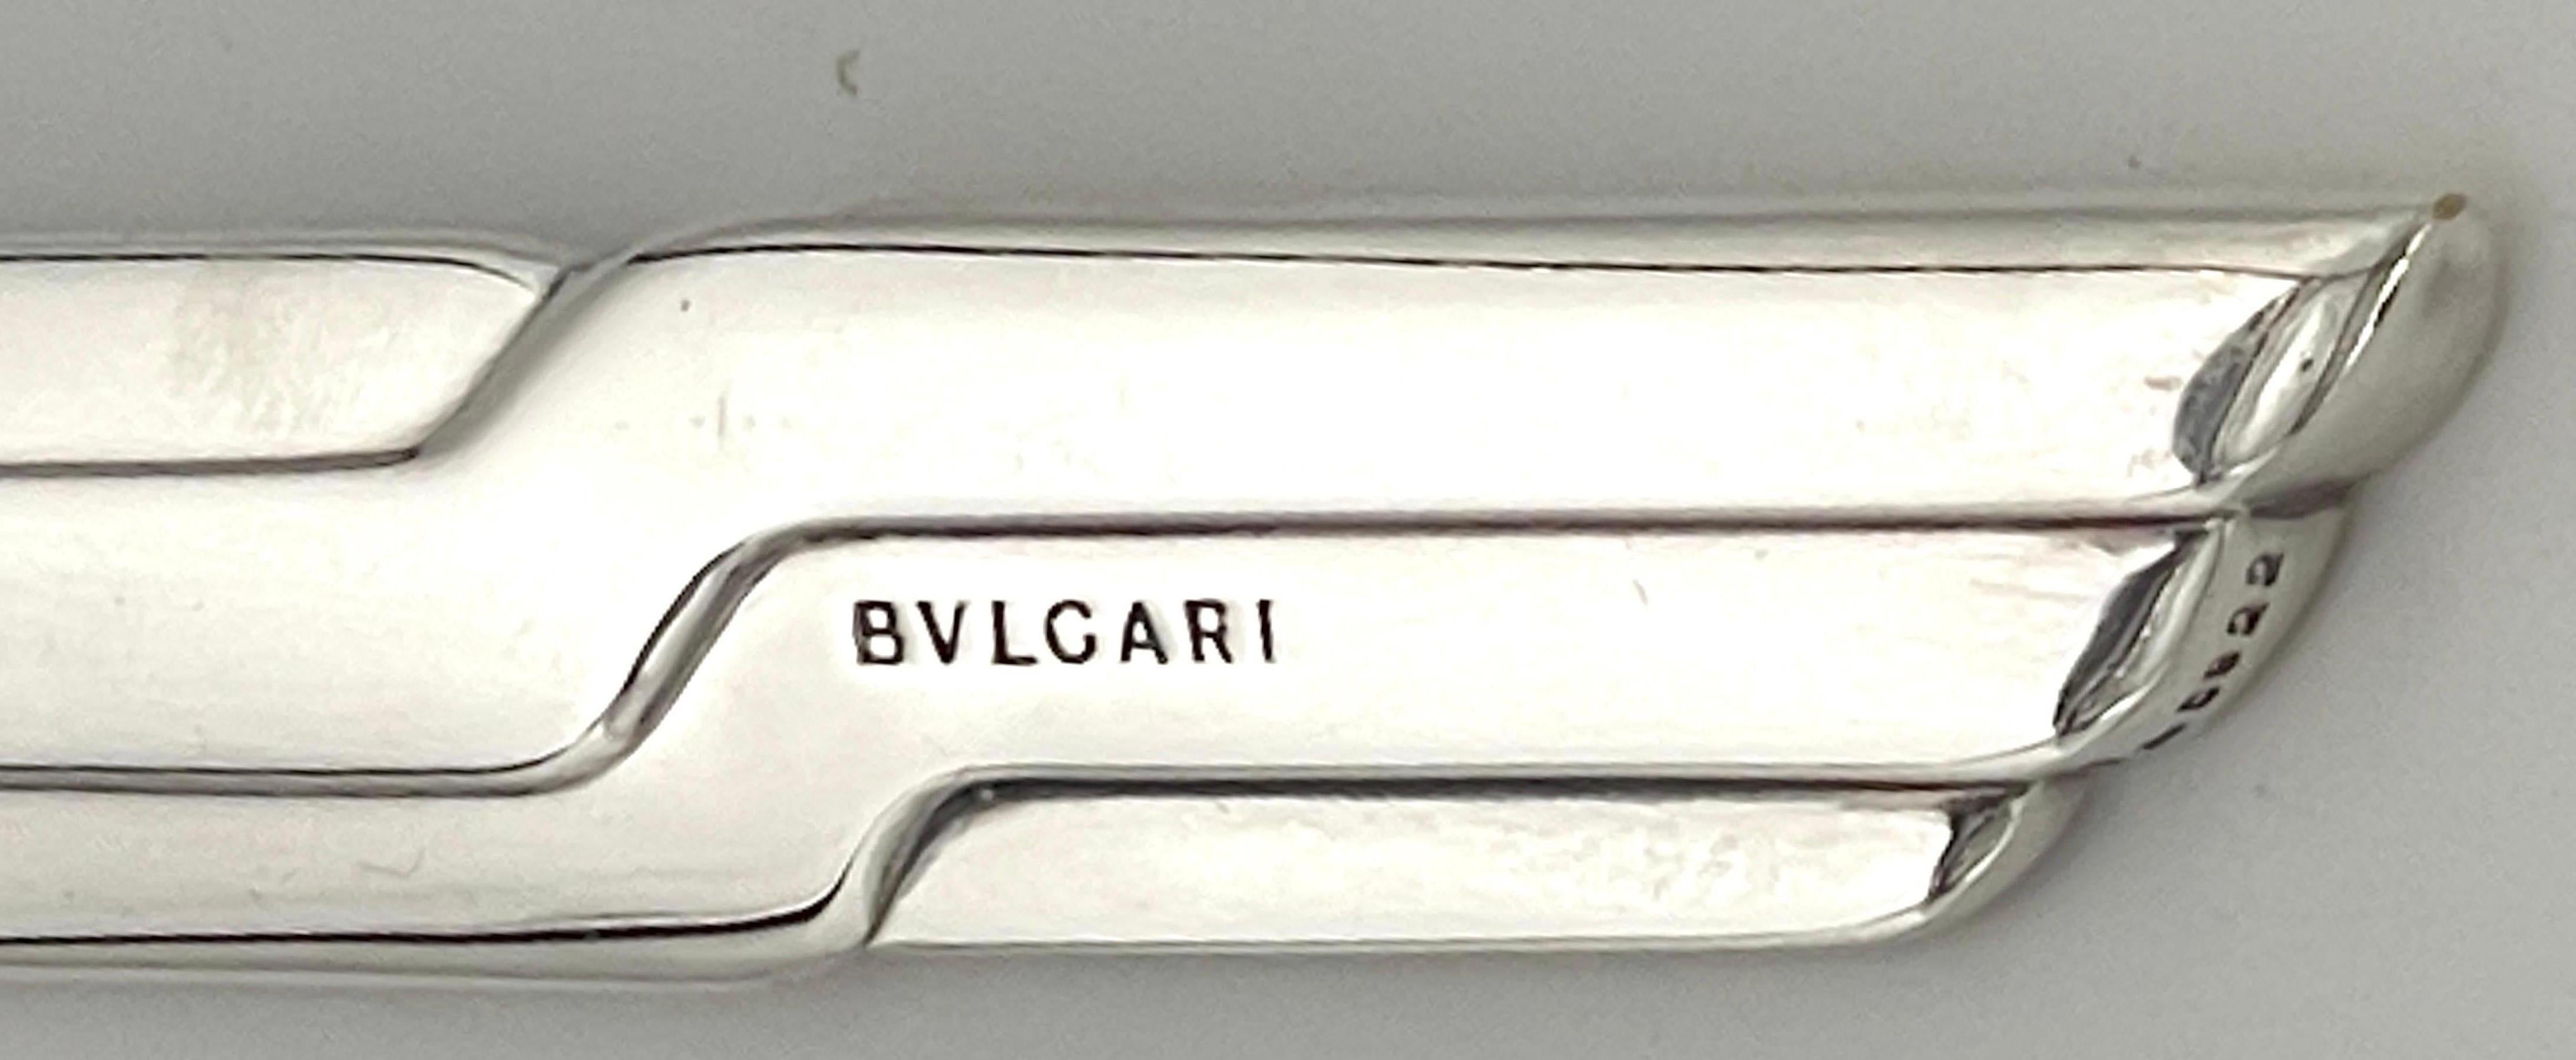 Cast Bvlgari Sterling Silver Modern Sculptural Letter Opener / 'Tagliacarte in Argent For Sale